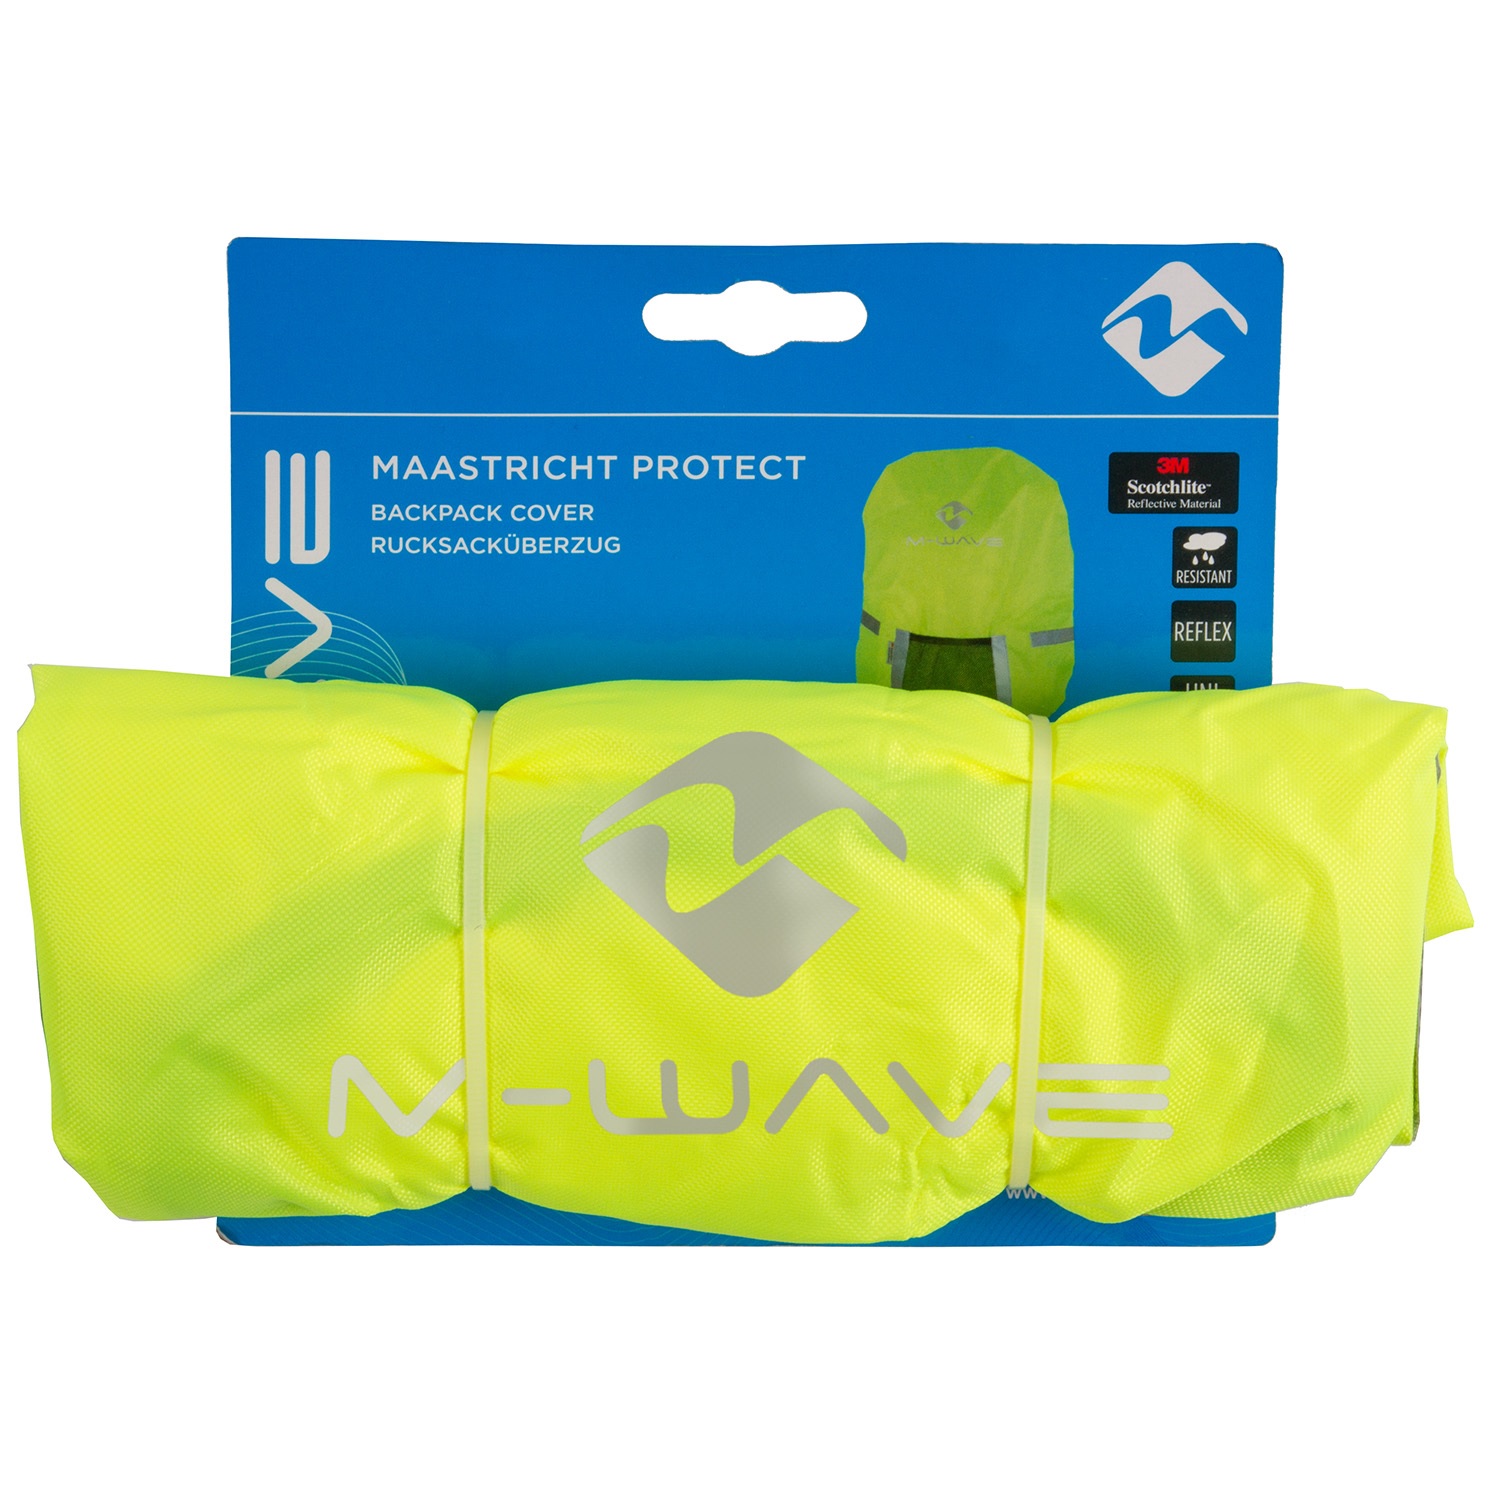 Sicherheits Taschenüberzug 25 Liter MAASTRICHT PROTECT 3M-REFLEX neongelb